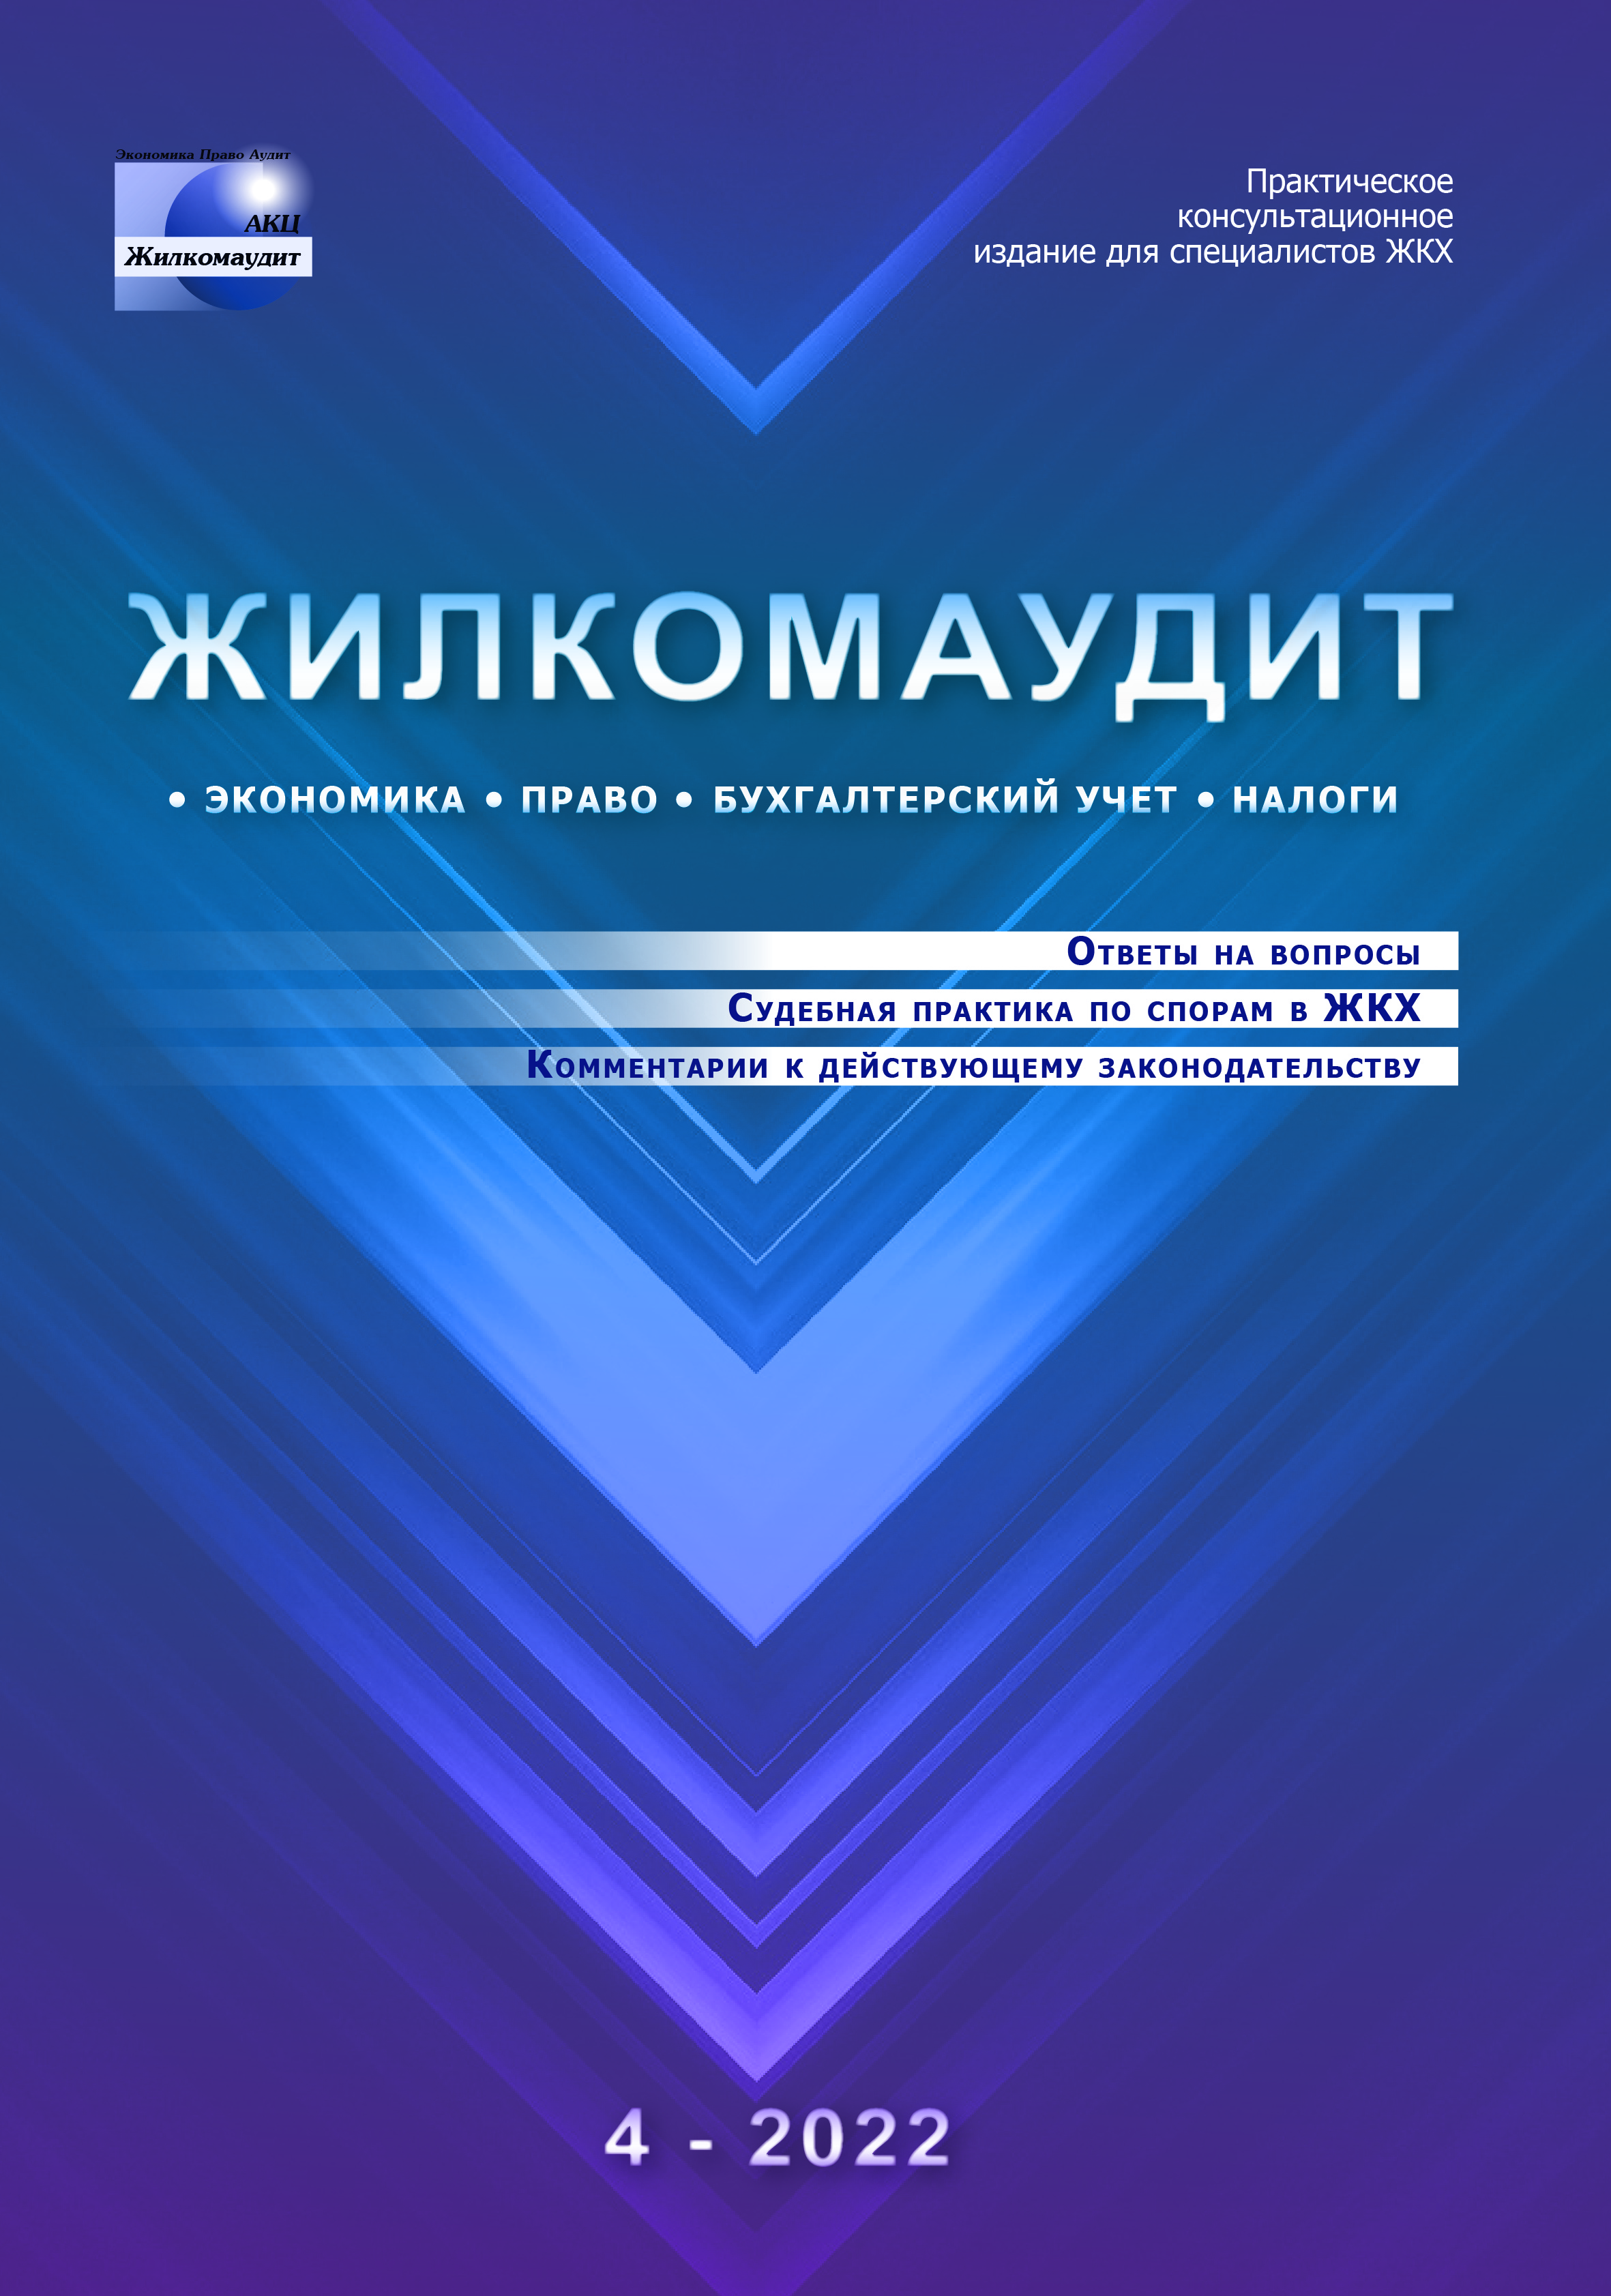 Журнал "Жилкомаудит"№4-2022